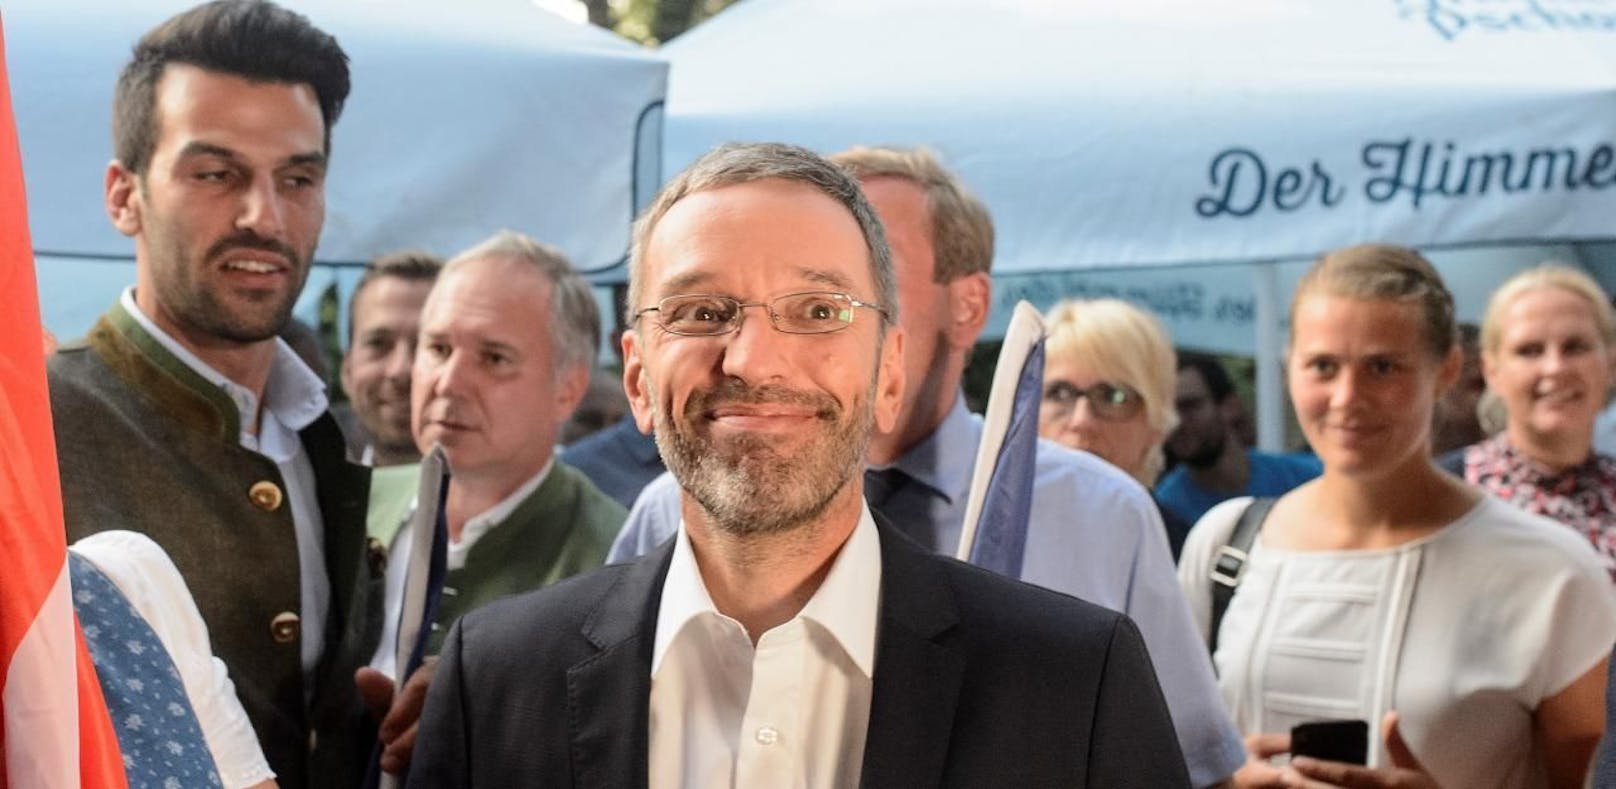 Herbert Kickl tritt derzeit als Scharfmacher gegen die ÖVP aus - anders als der Rest der FPÖ.